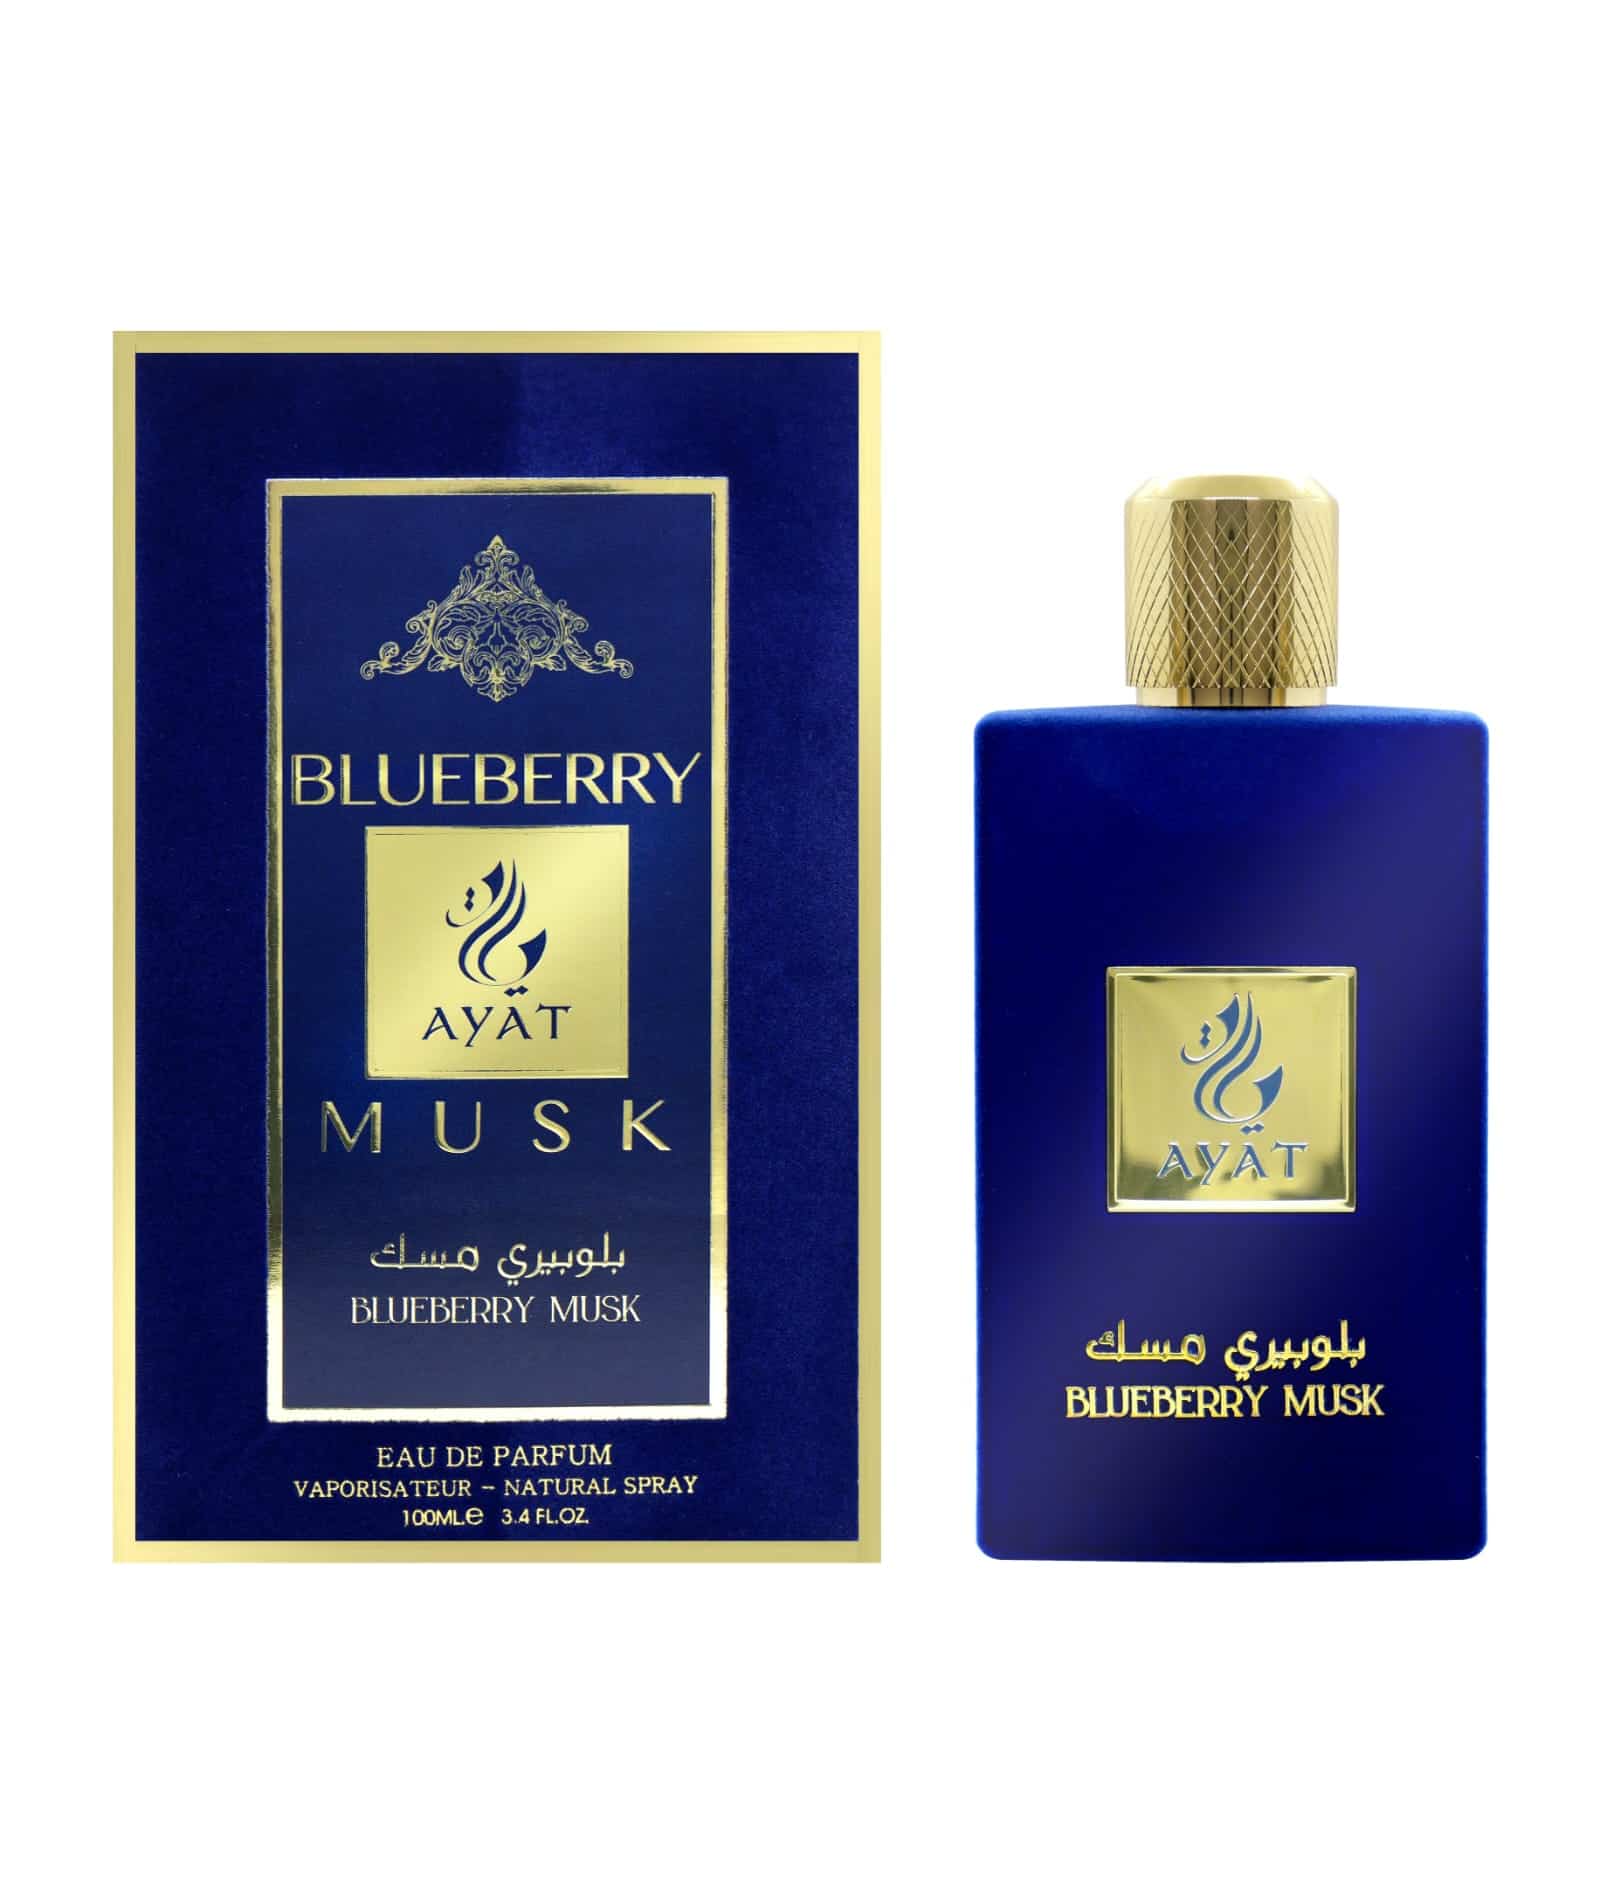 Blueberry musk velvet perfume